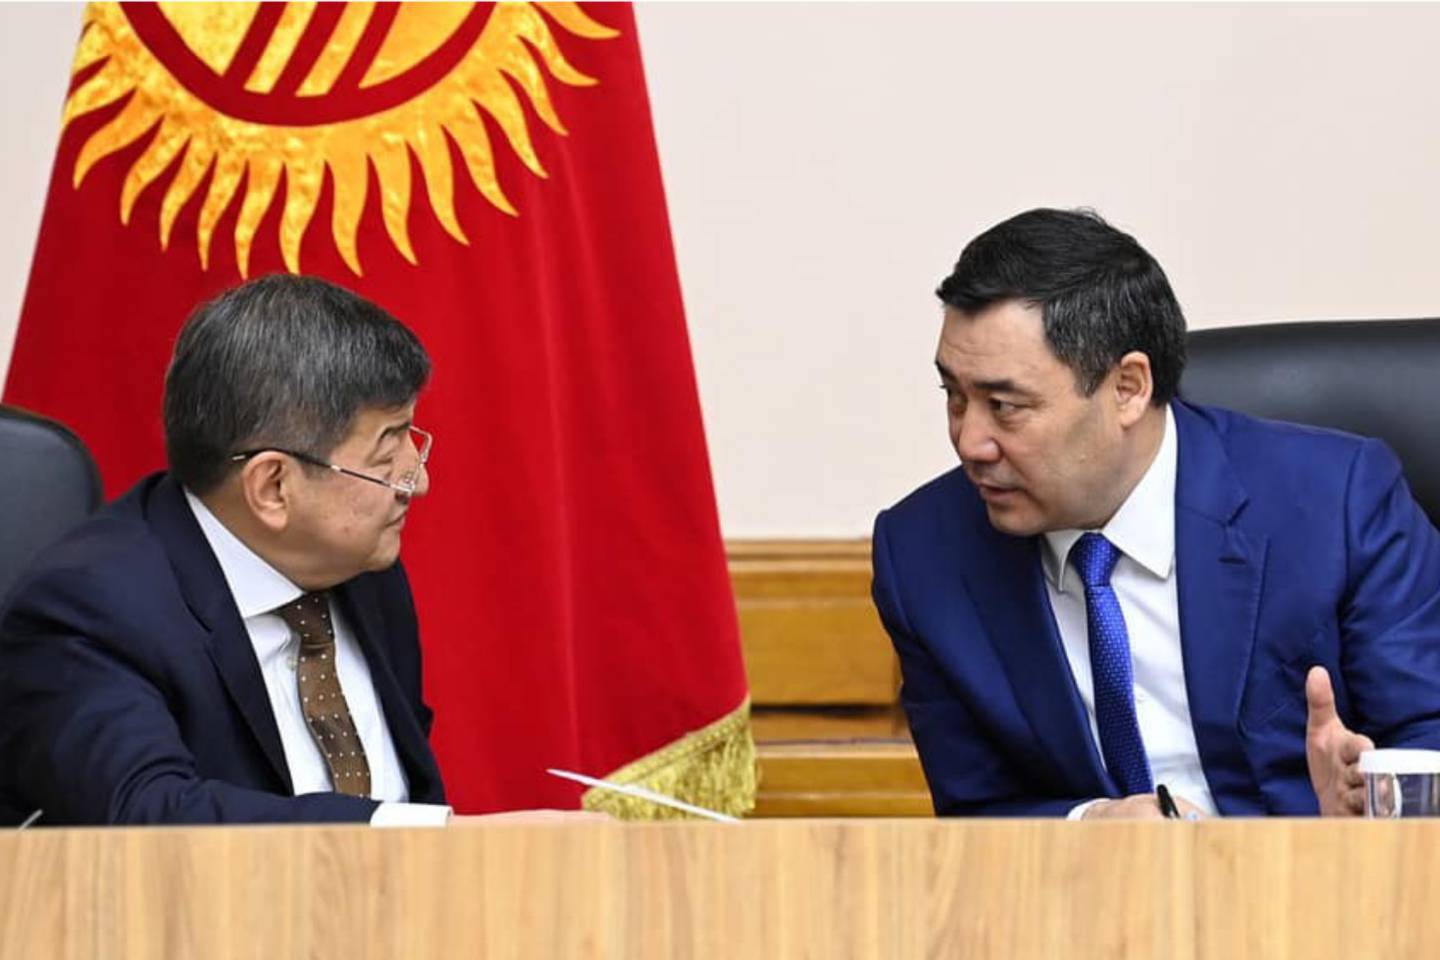 Новости мира / Политика в мире / Жителей Кыргызстана просят воздержаться от оскорблений в адрес премьер-министра